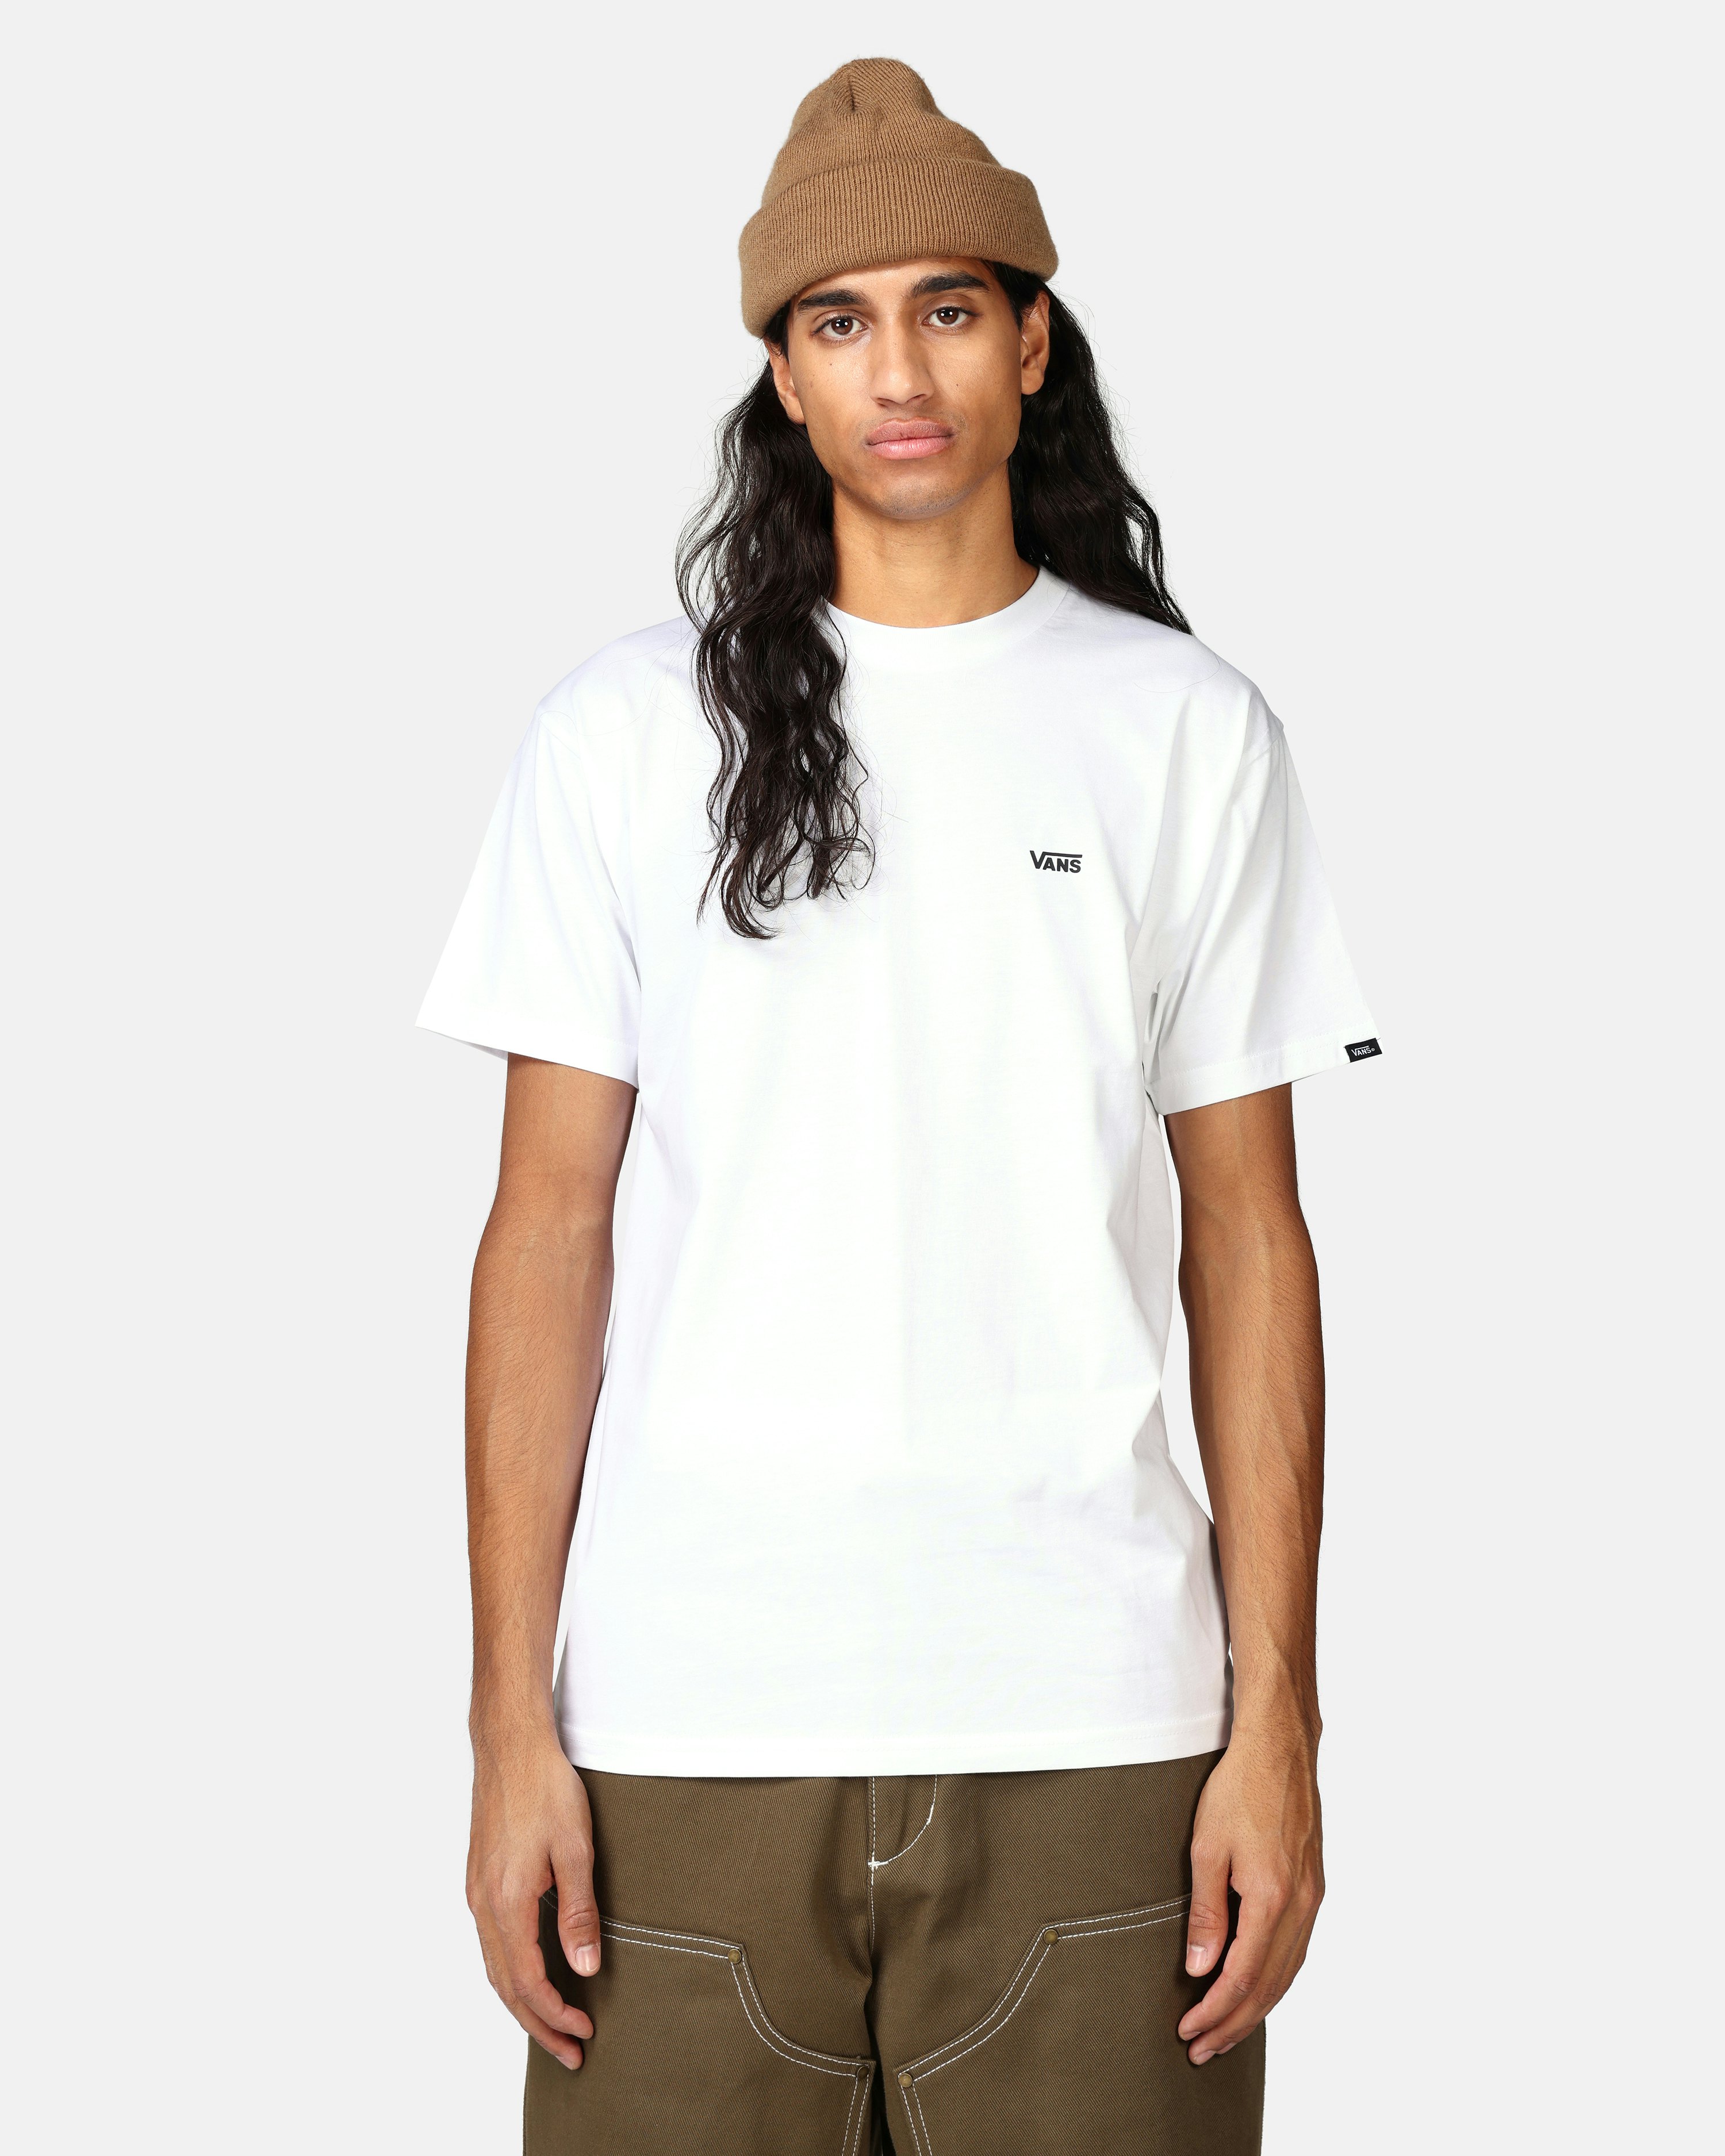 Vans | Chest - Left T-Shirt Men Logo White | Junkyard